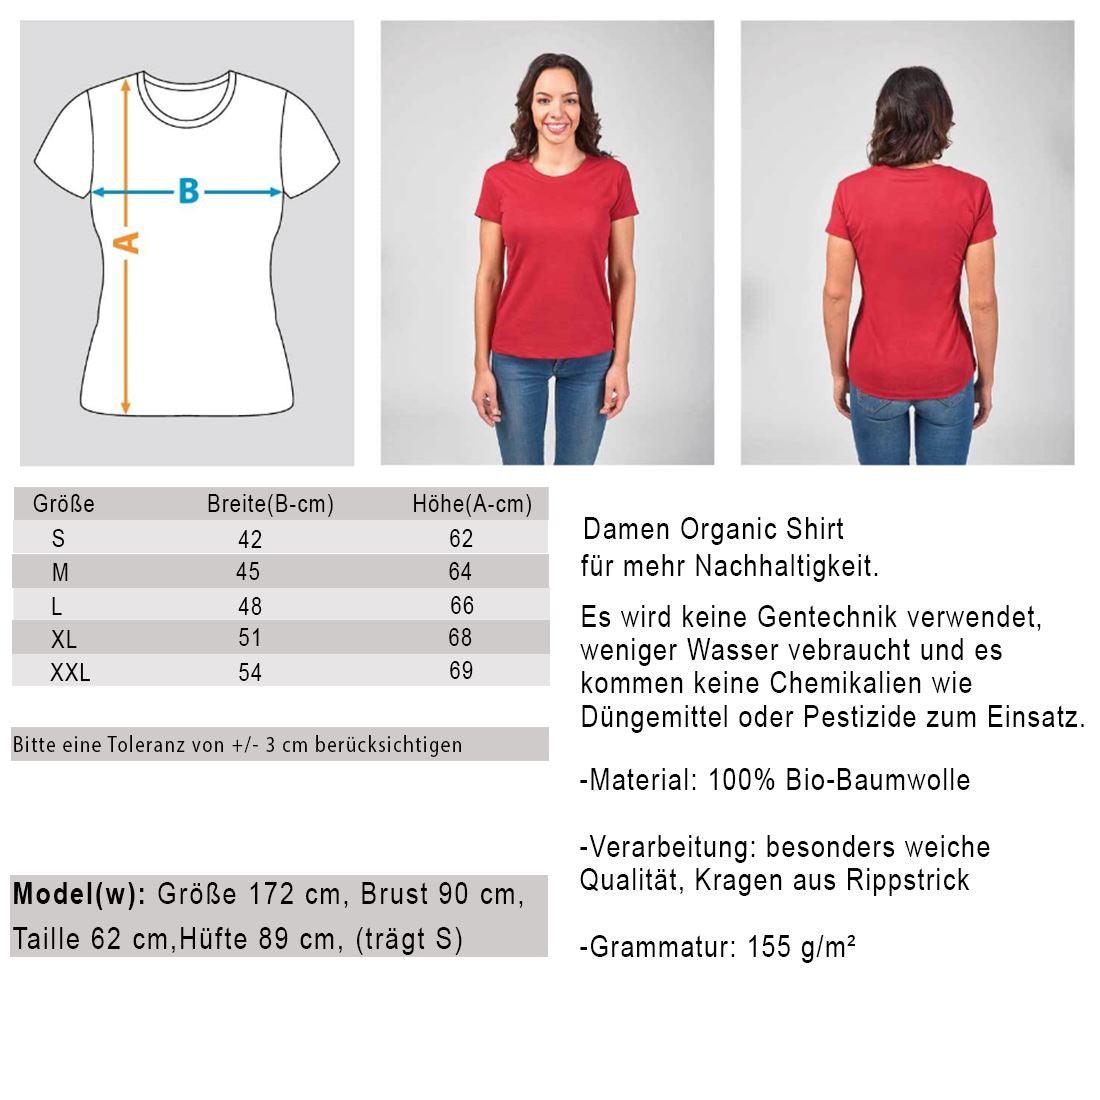 Not the same but equal - Damen Organic Shirt - Team Vegan © vegan t shirt